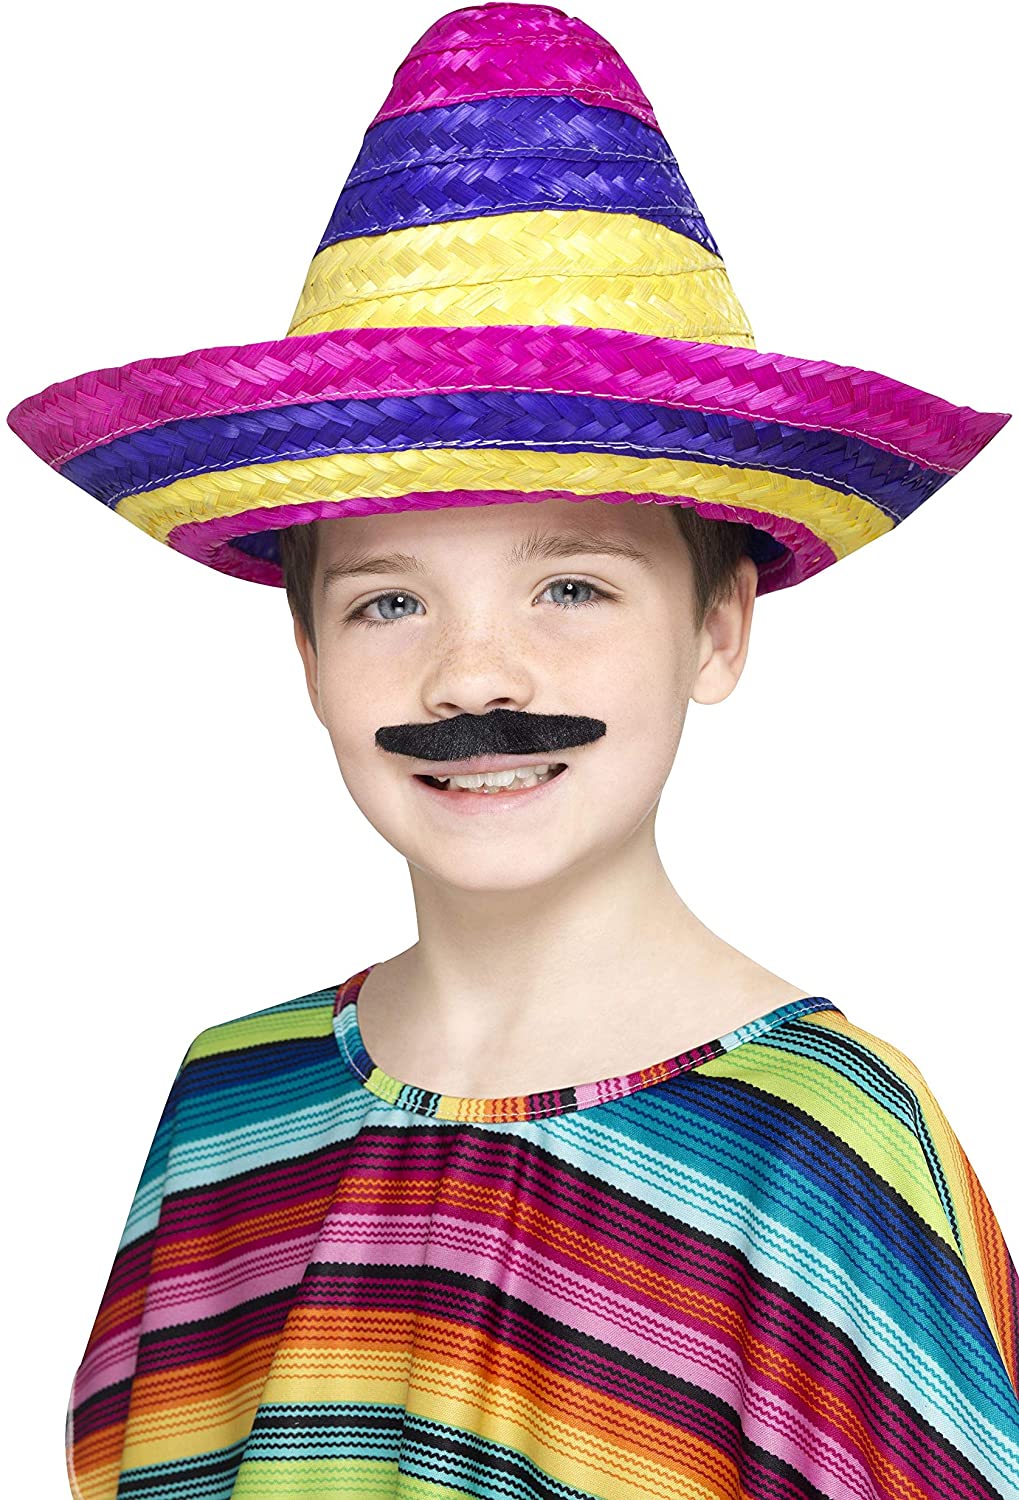 Smiffys Child Sombrero Hat